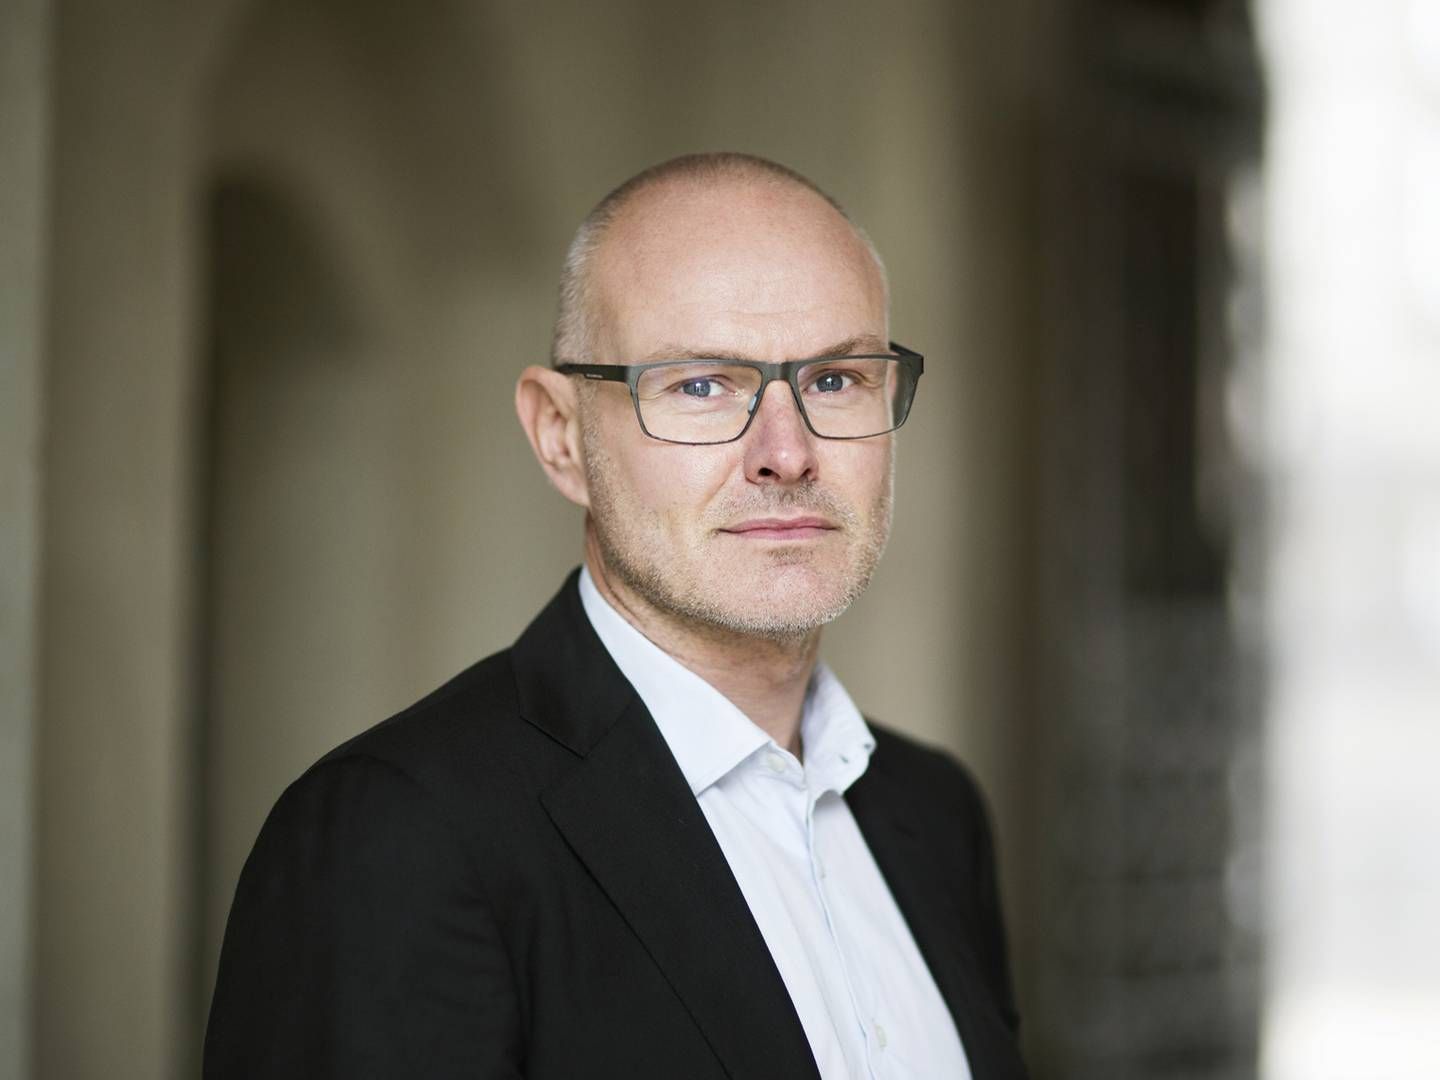 Chefkonsulent Poul Noer fra Dansk Erhverv mener, at strammere datakrav kan skabe problemer for danske virksomheder. | Foto: PR/Dansk Erhverv